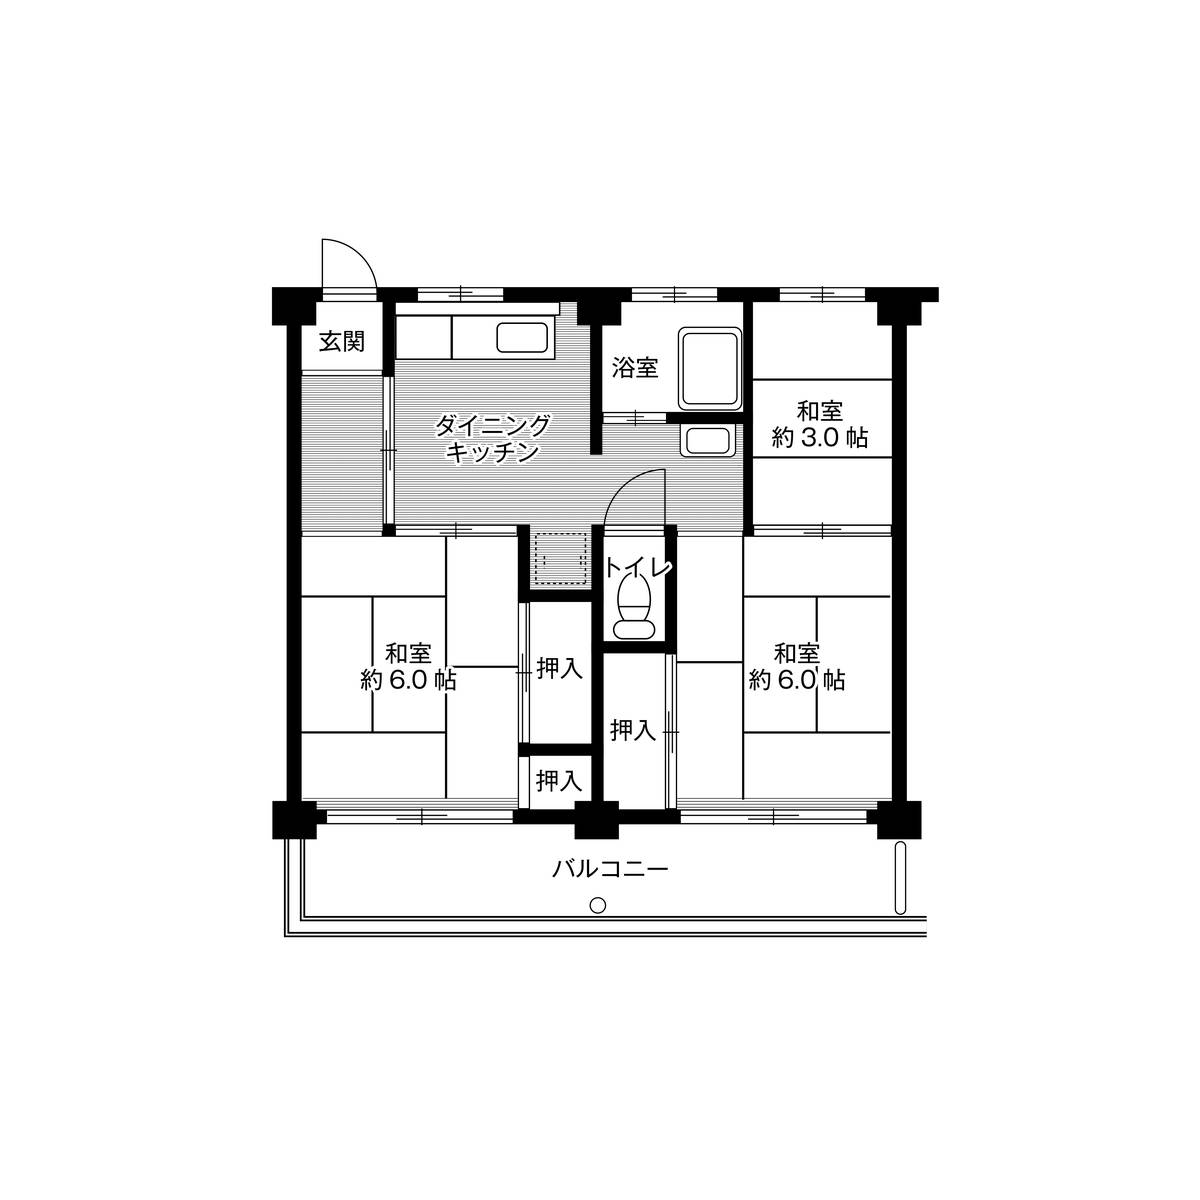 3DK floorplan of Village House Inoue in Komaki-shi